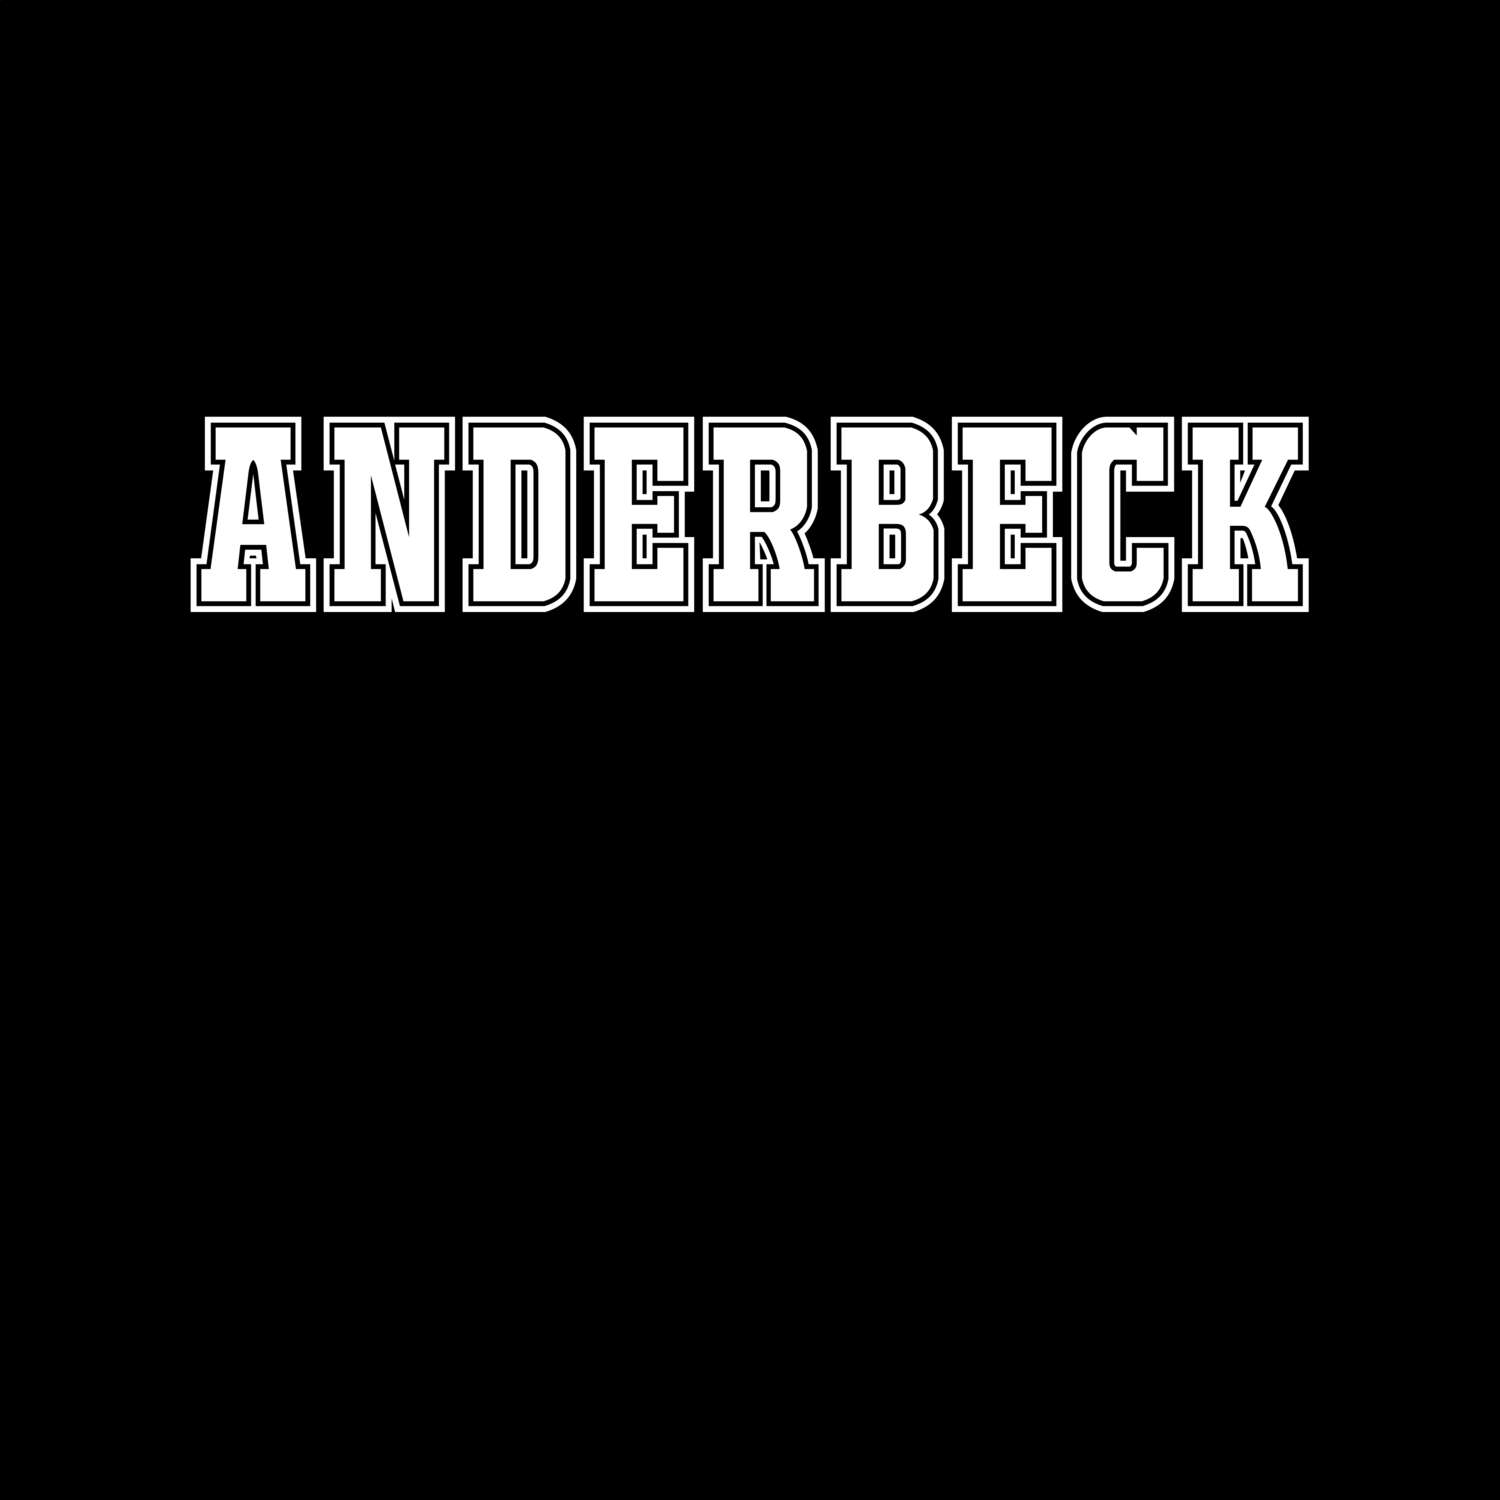 Anderbeck T-Shirt »Classic«